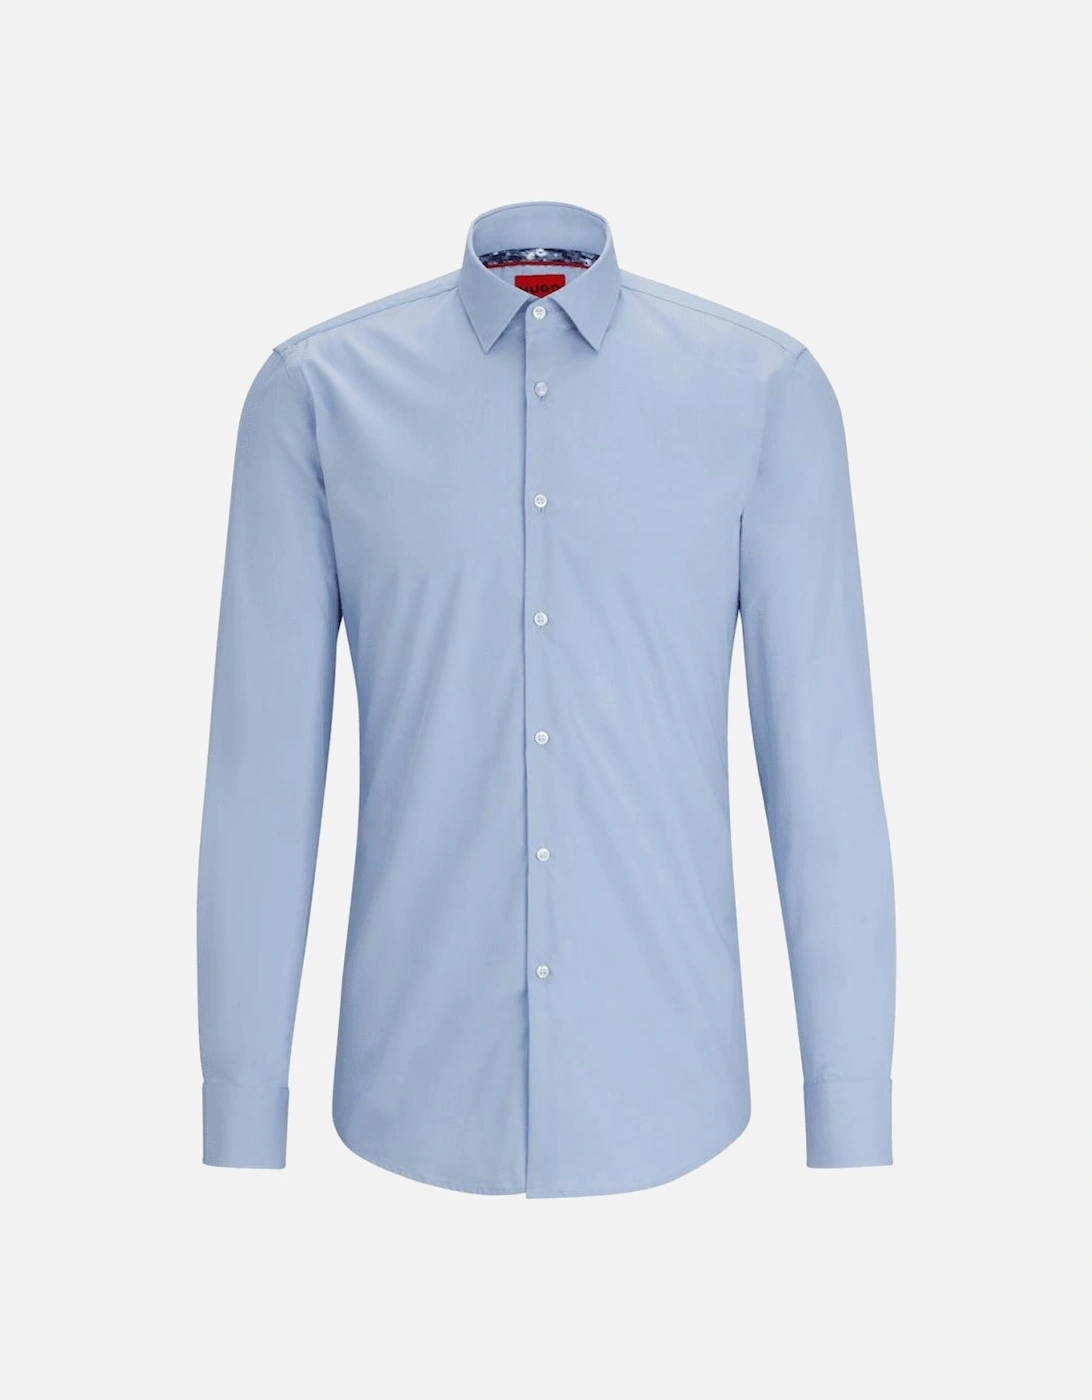 Koey Button Up Long Sleeve Light Blue Shirt, 4 of 3